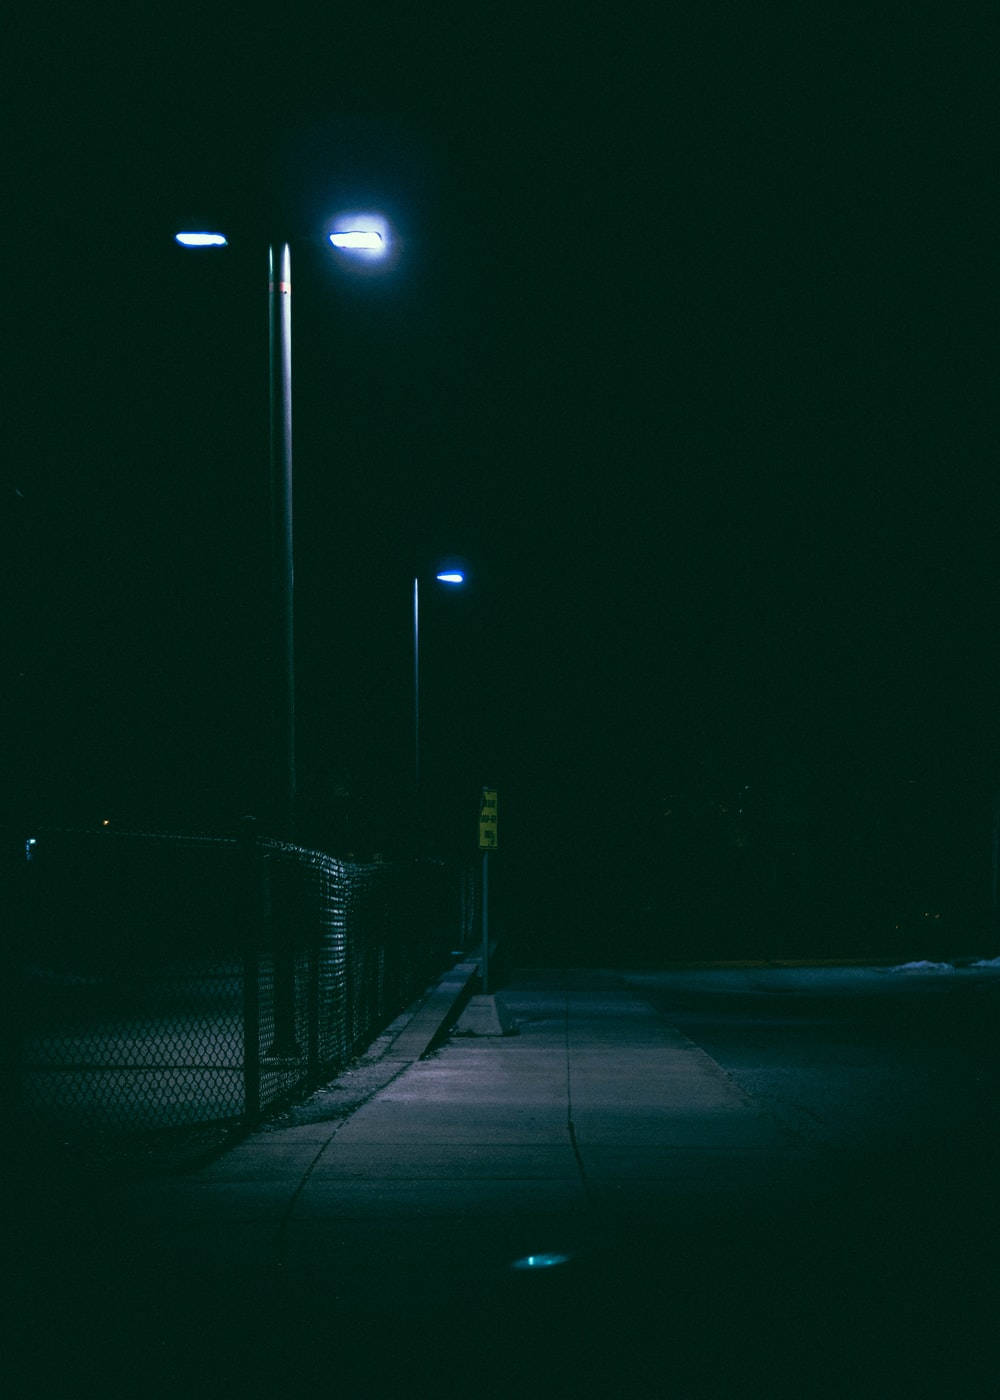 temerario Oral La base de datos Download Dark Night Sidewalk With Light Wallpaper | Wallpapers.com